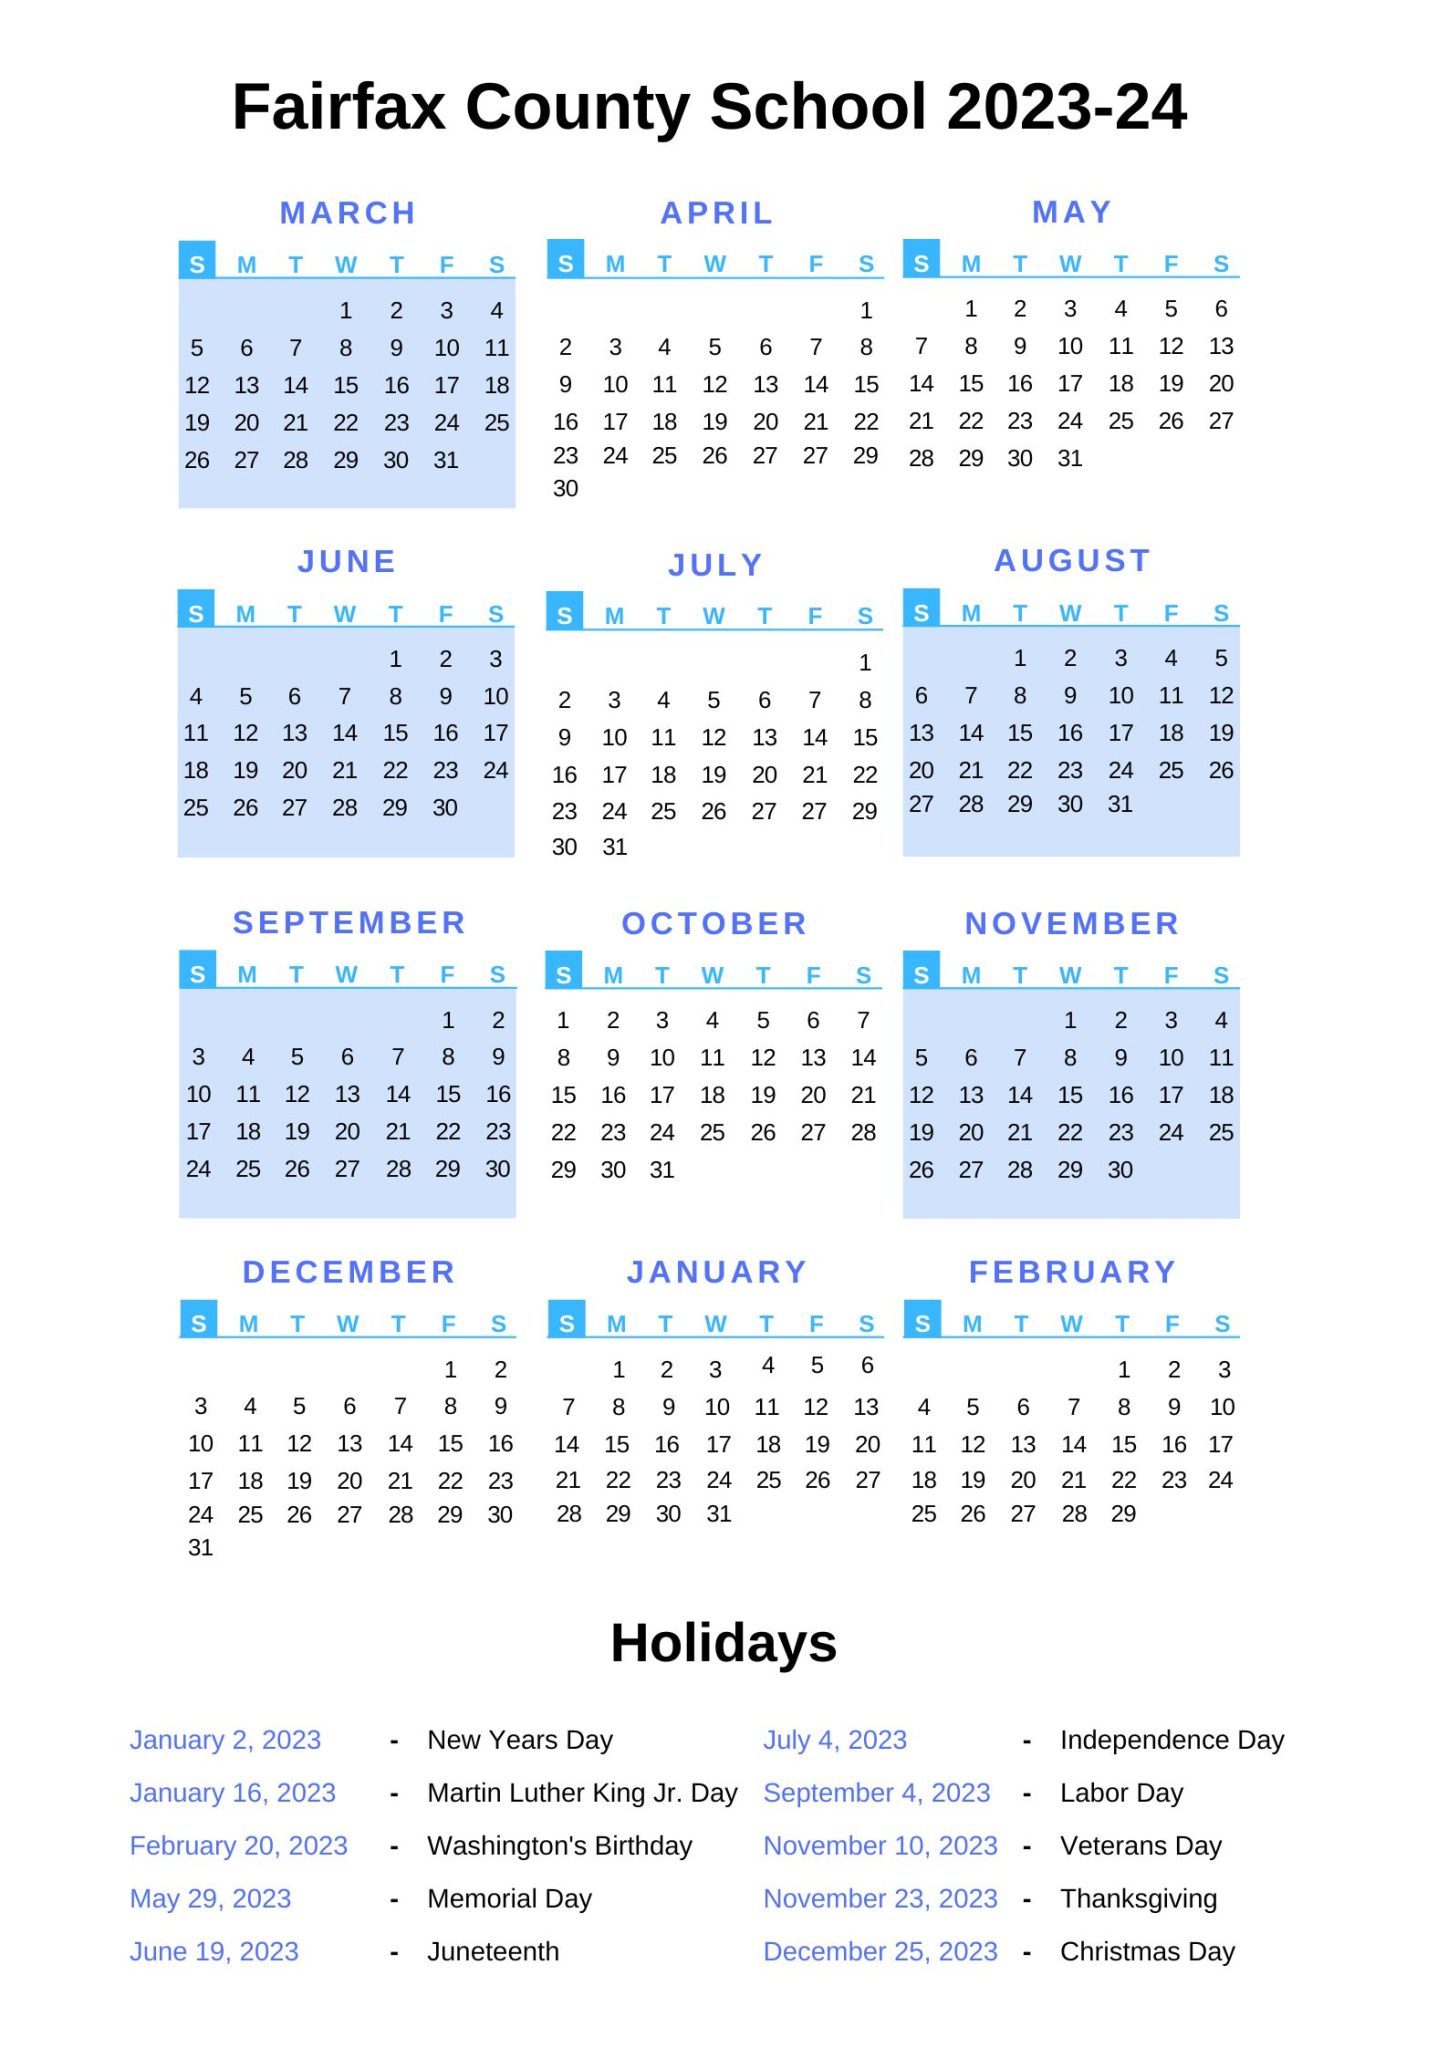 Fairfax County School Calendar With Holidays 2022 2023